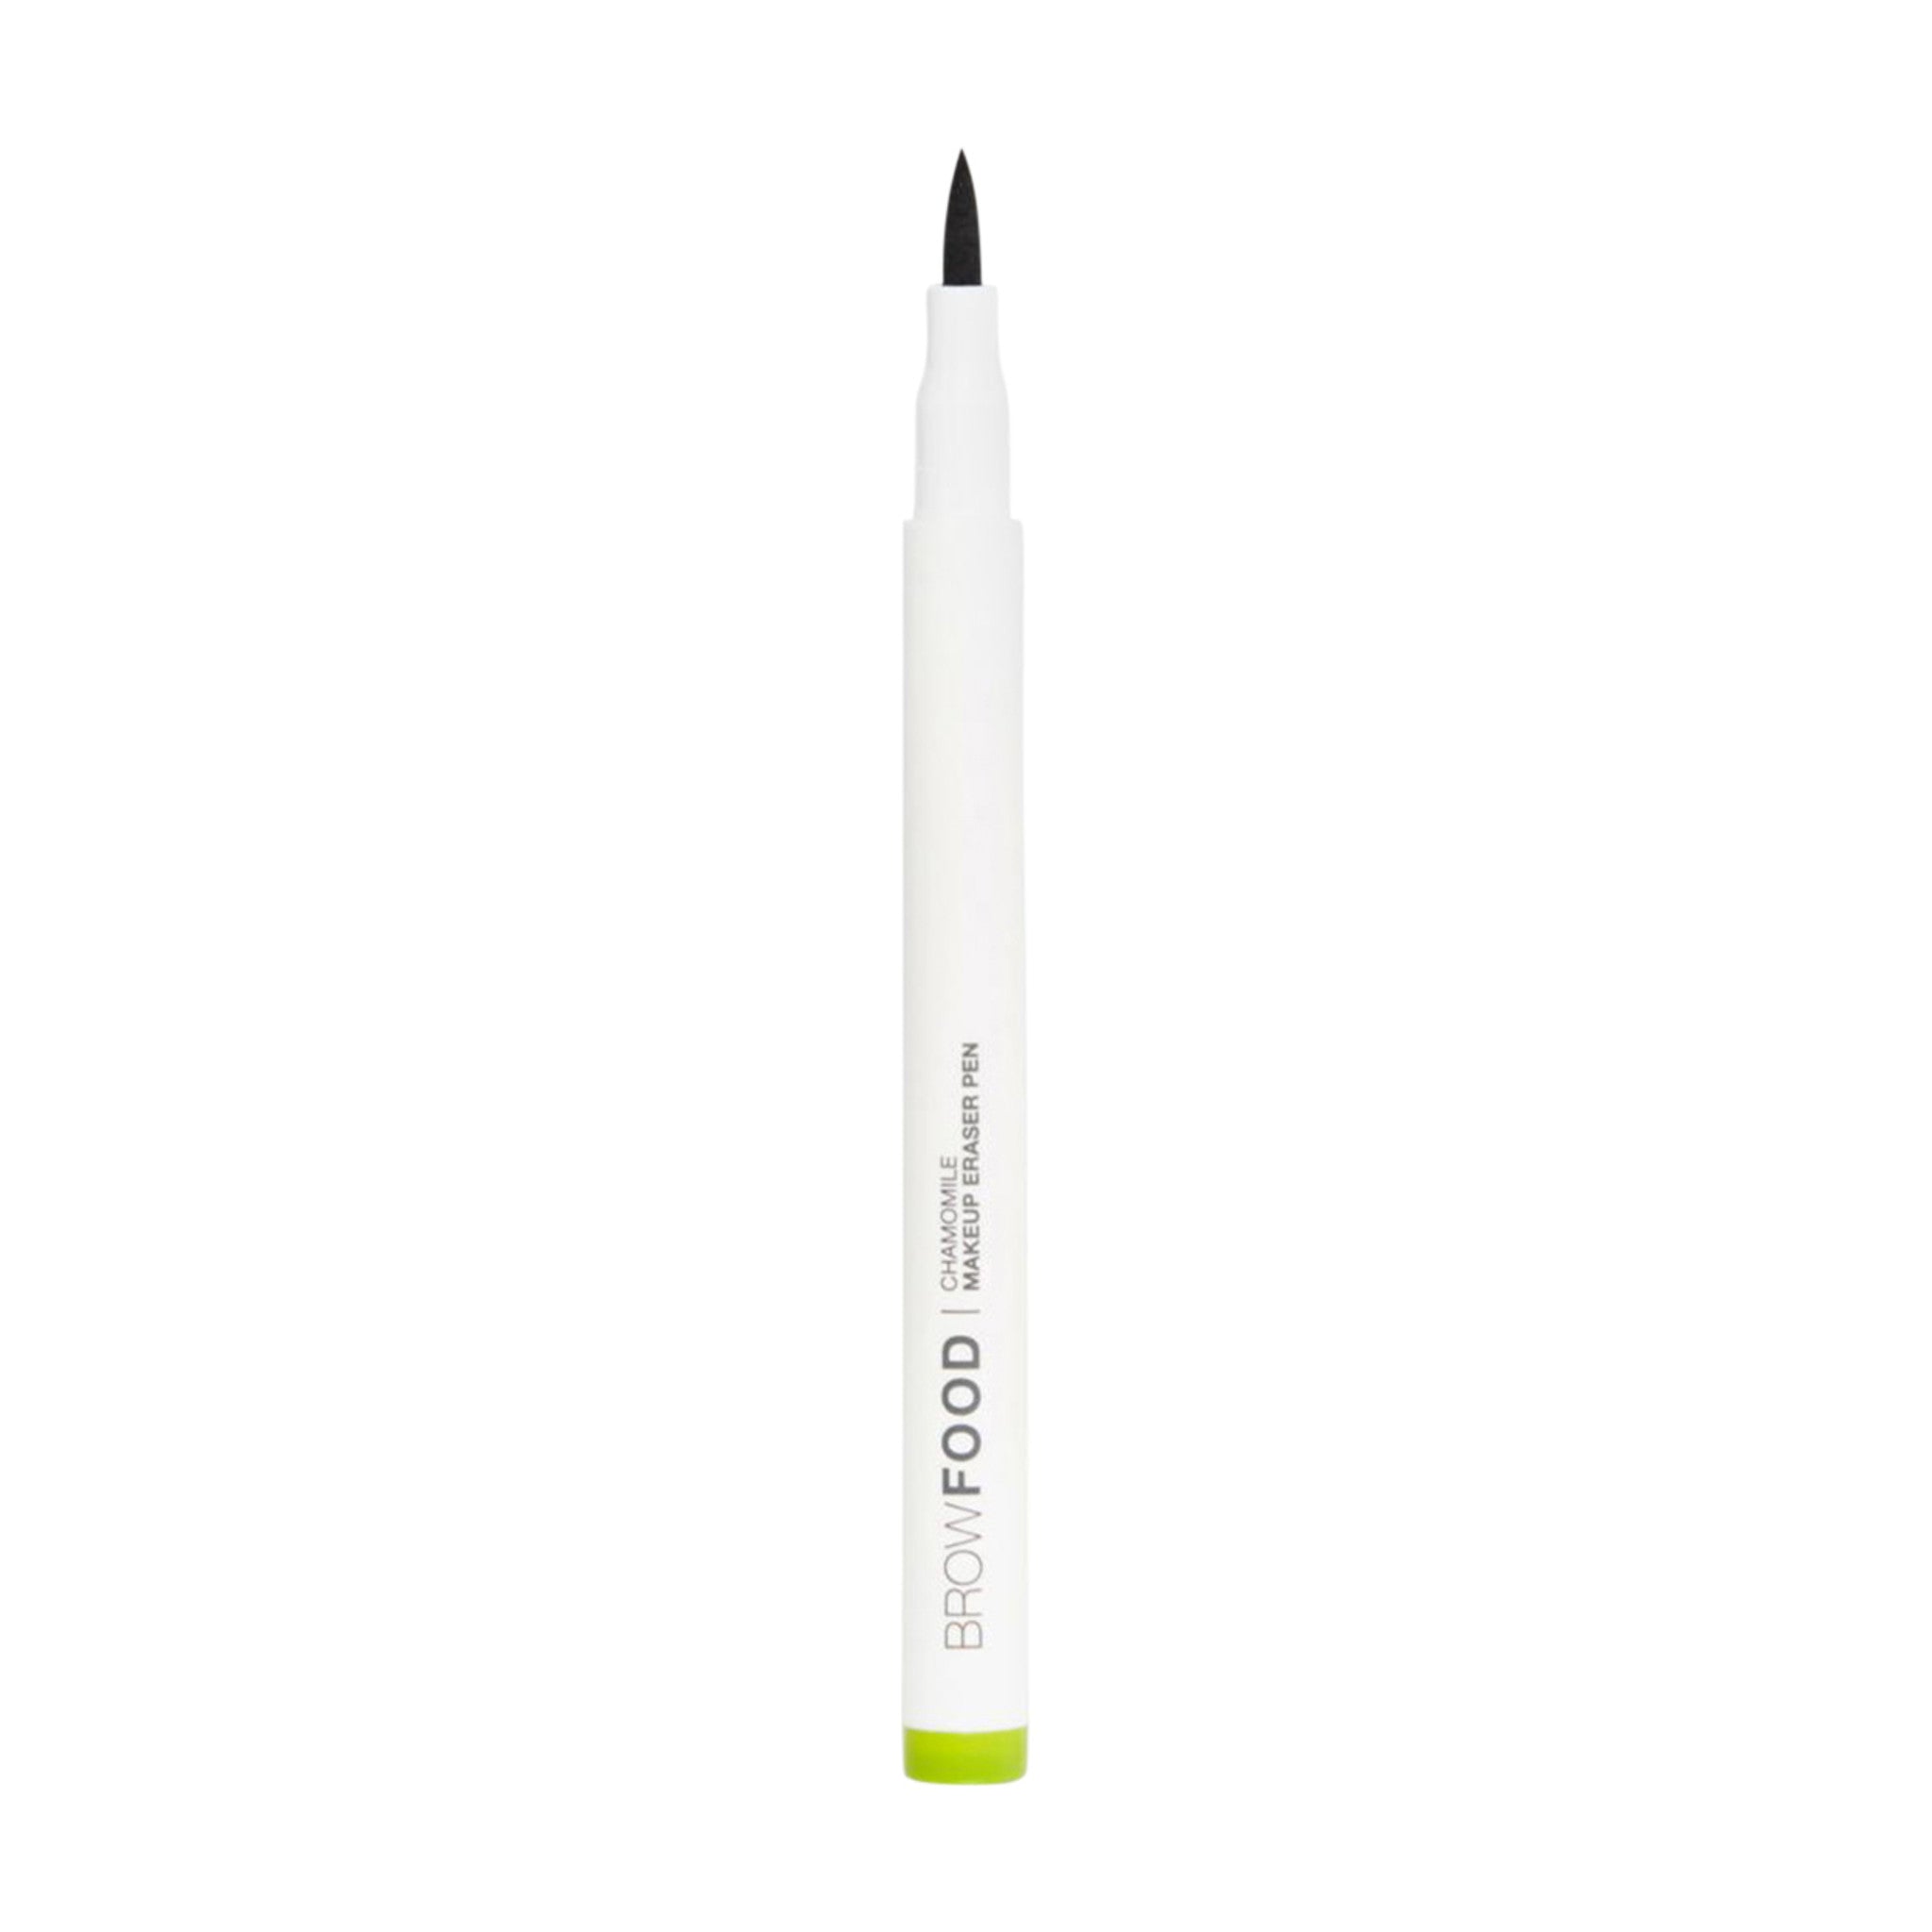 LashFood Chamomile Makeup Eraser Pen main image.